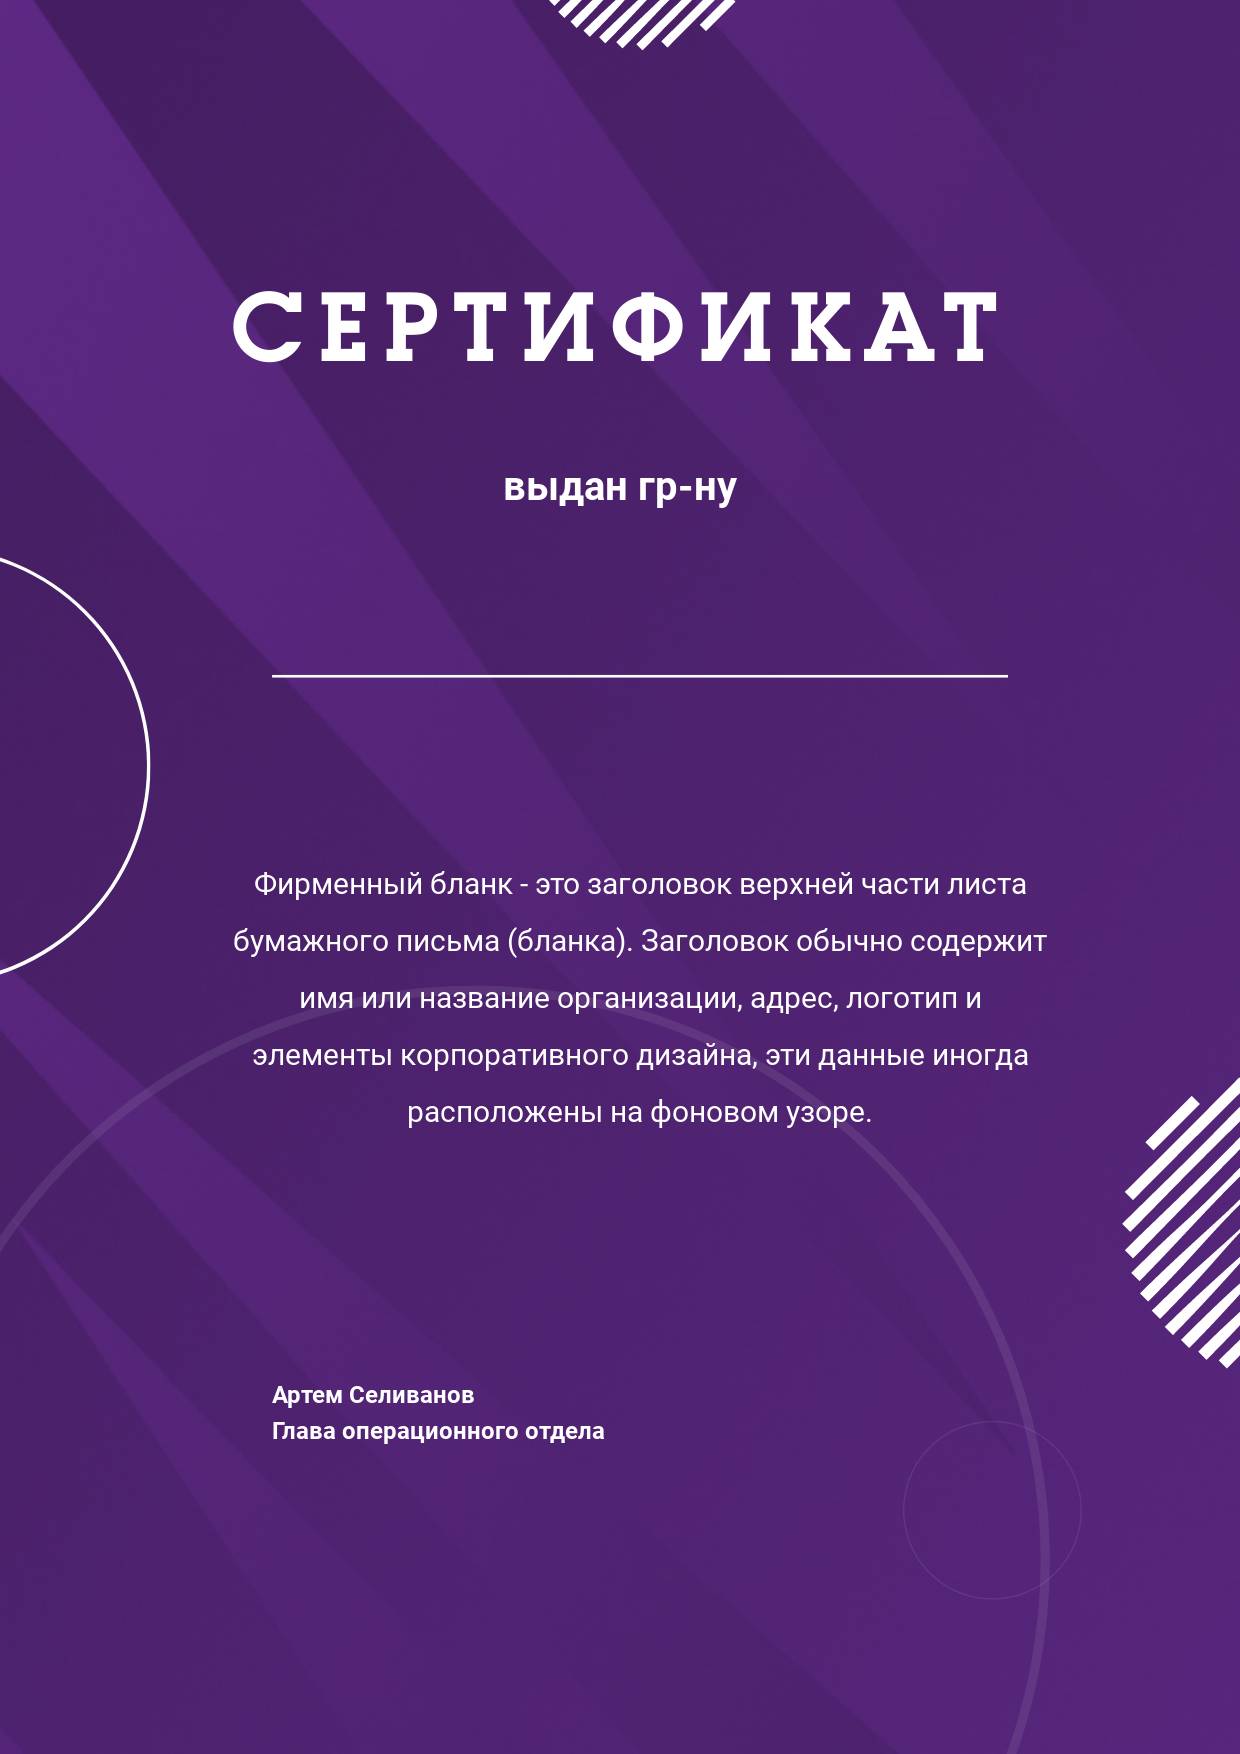 Яркий темно-фиолетовый бланк сертификата с готовыми полями для заполнения и декоративными элементами на фоне